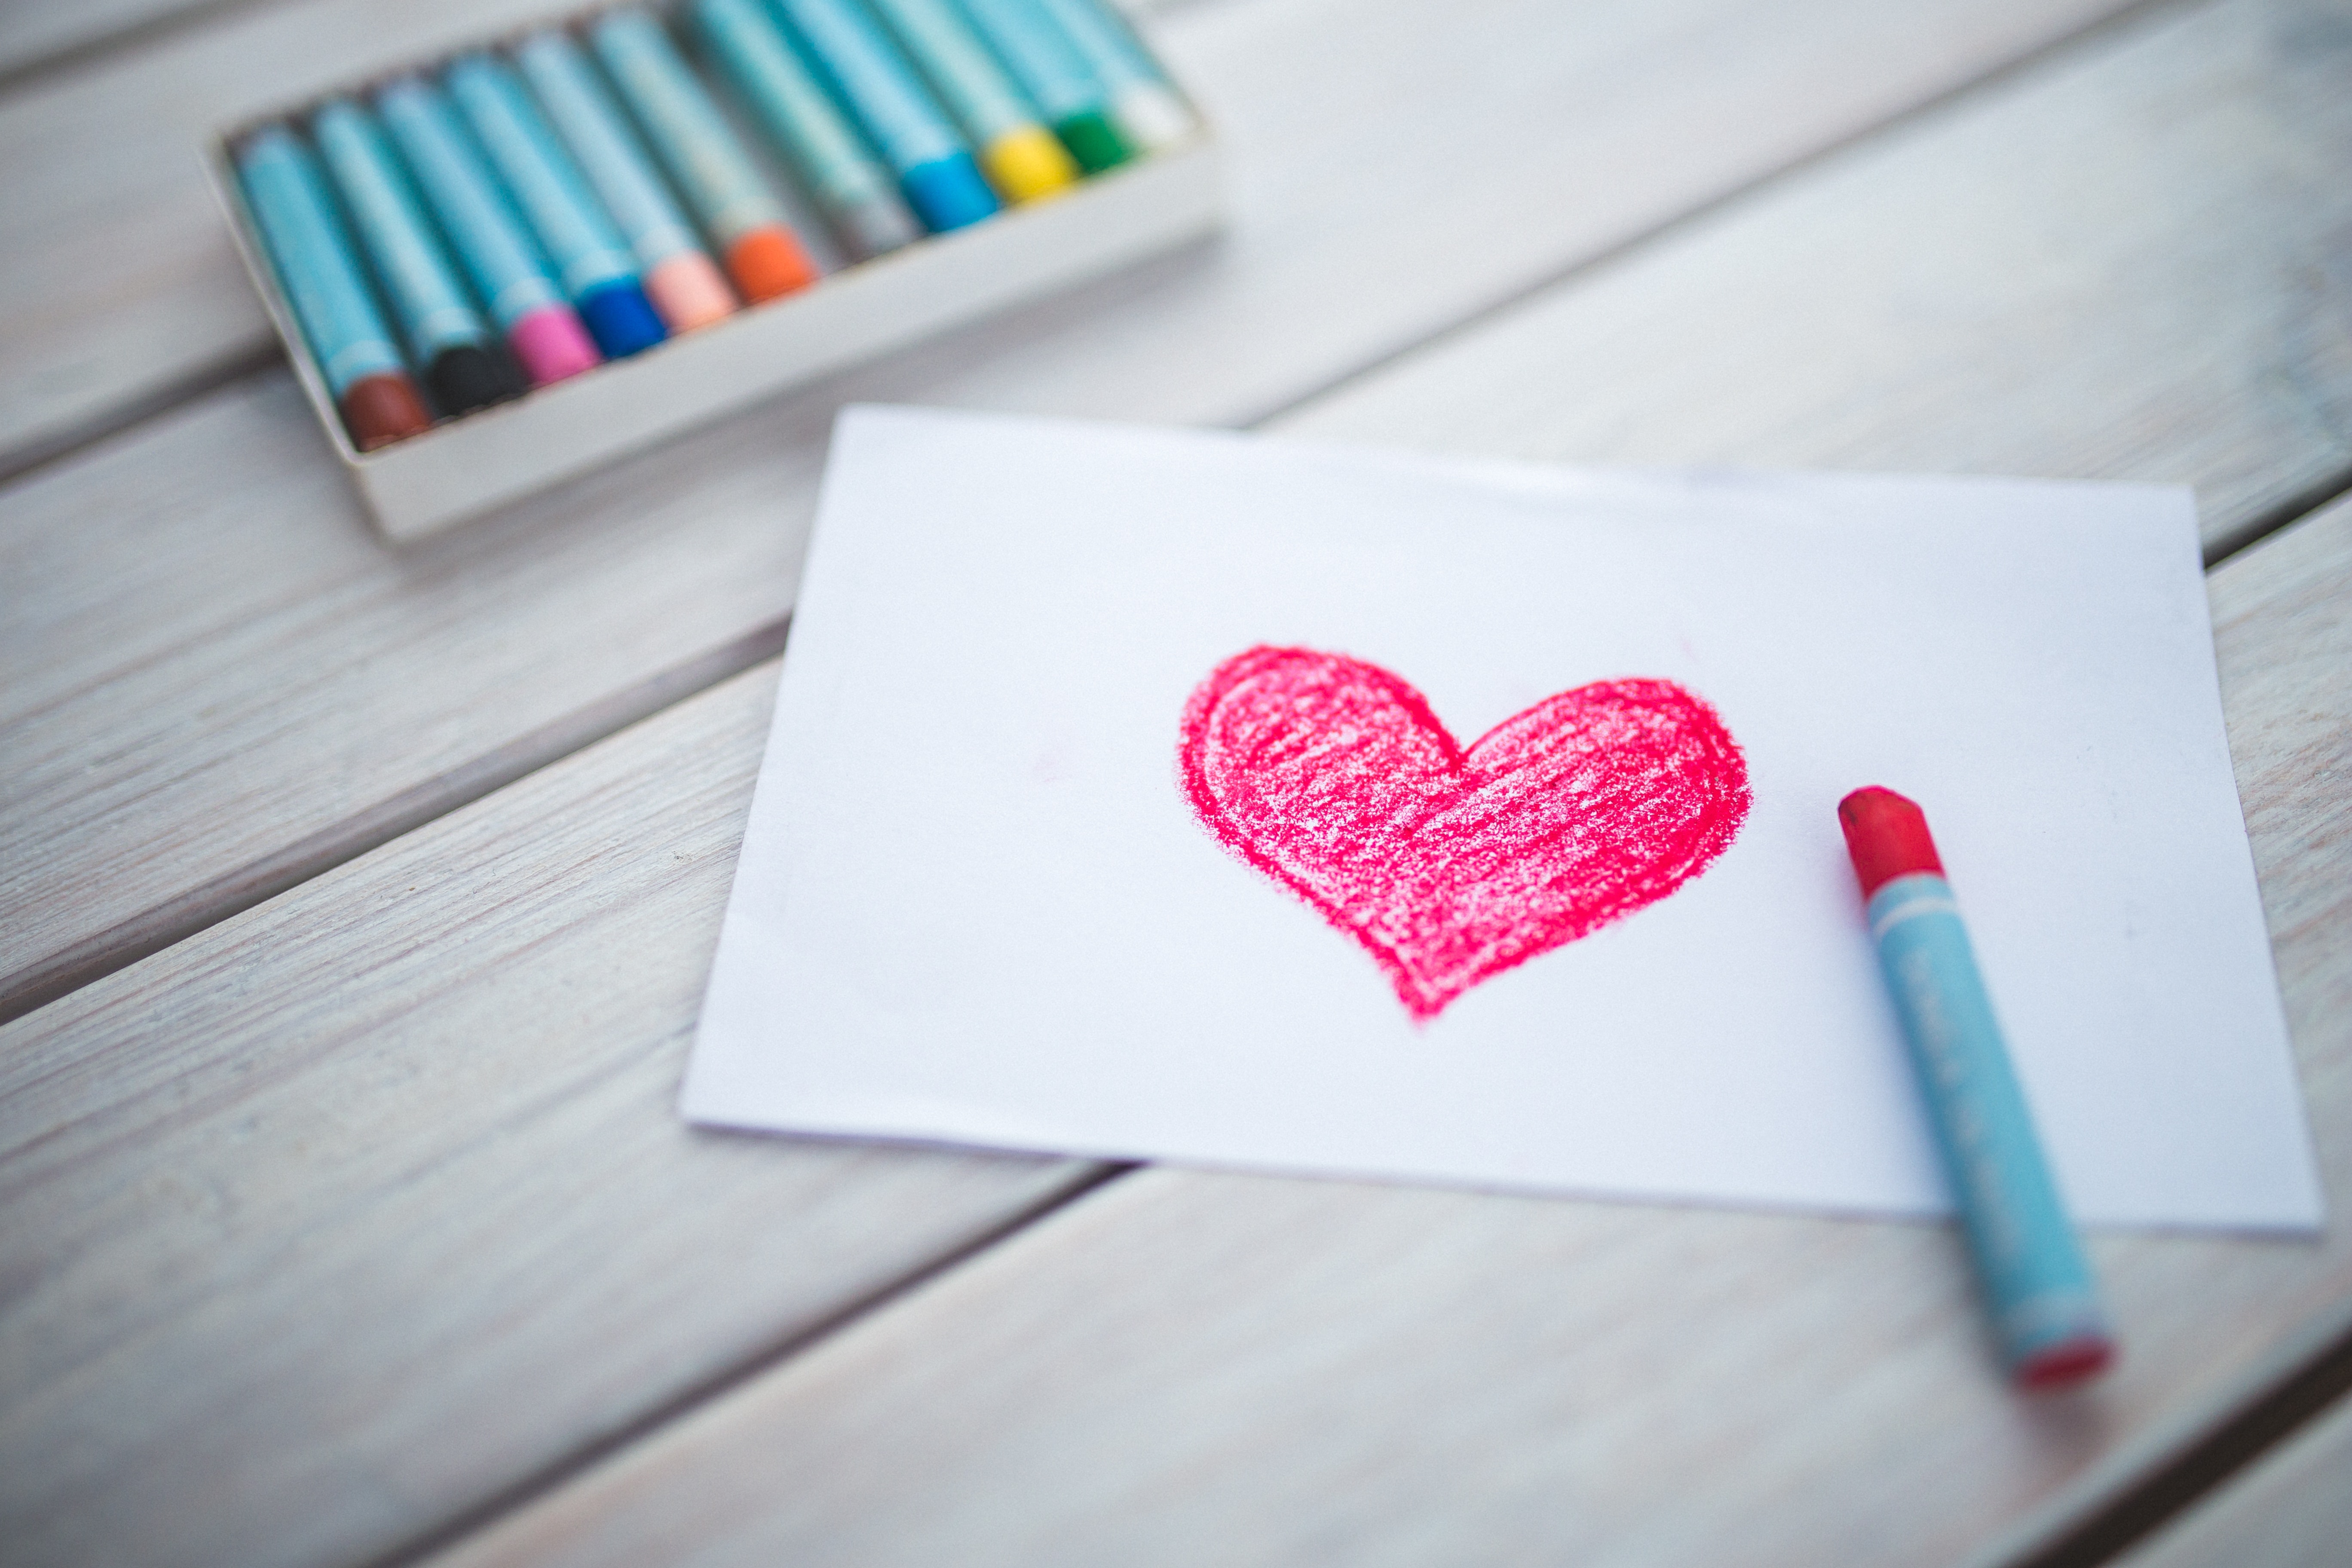  24 divertidas actividades para colorear corazones que encantarán a los niños